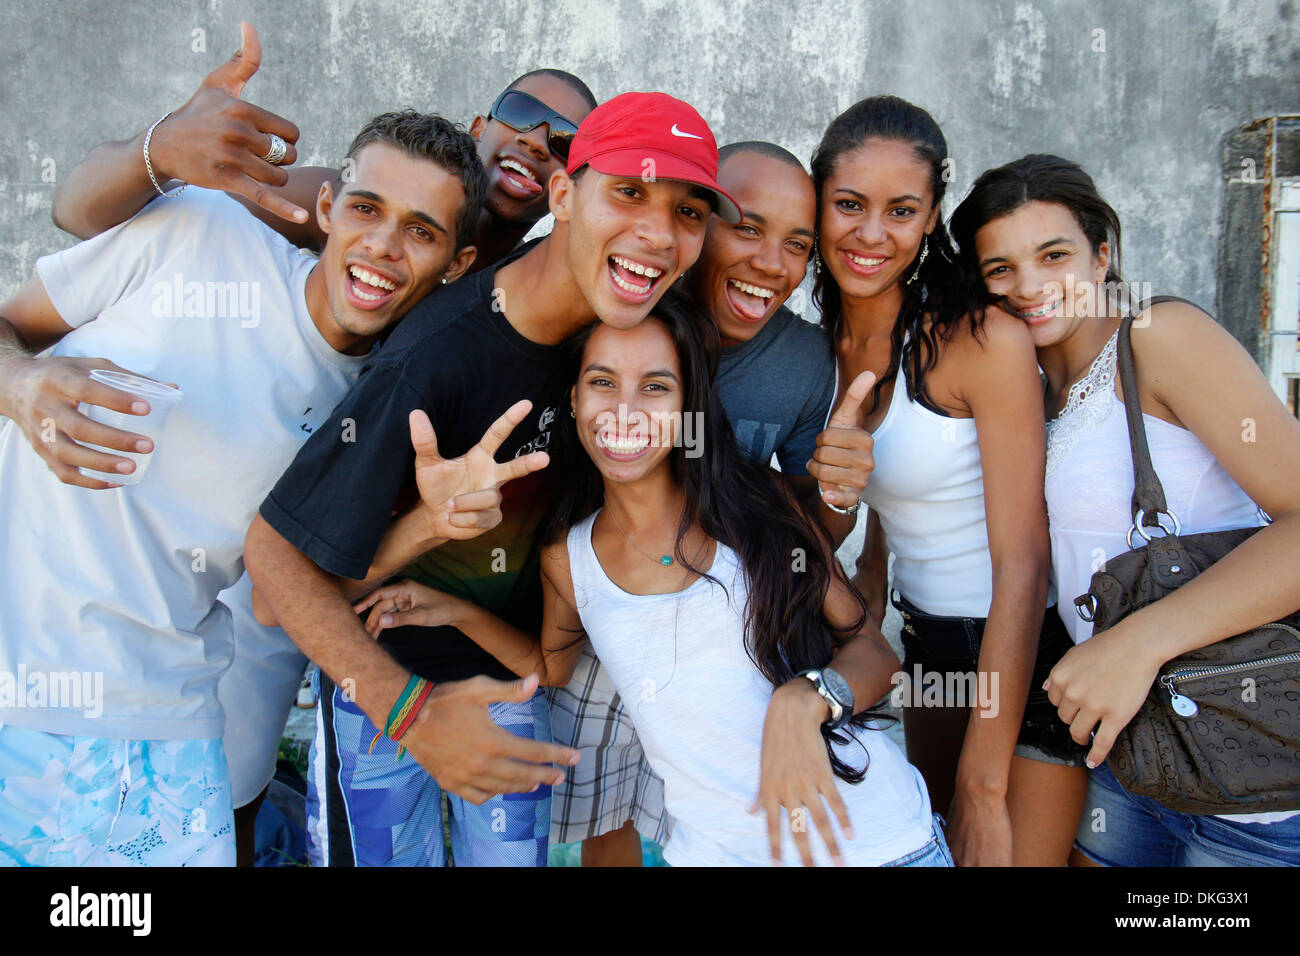 Les jeunes brésiliens, Salvador, Bahia, Brésil, Amérique du Sud Banque D'Images